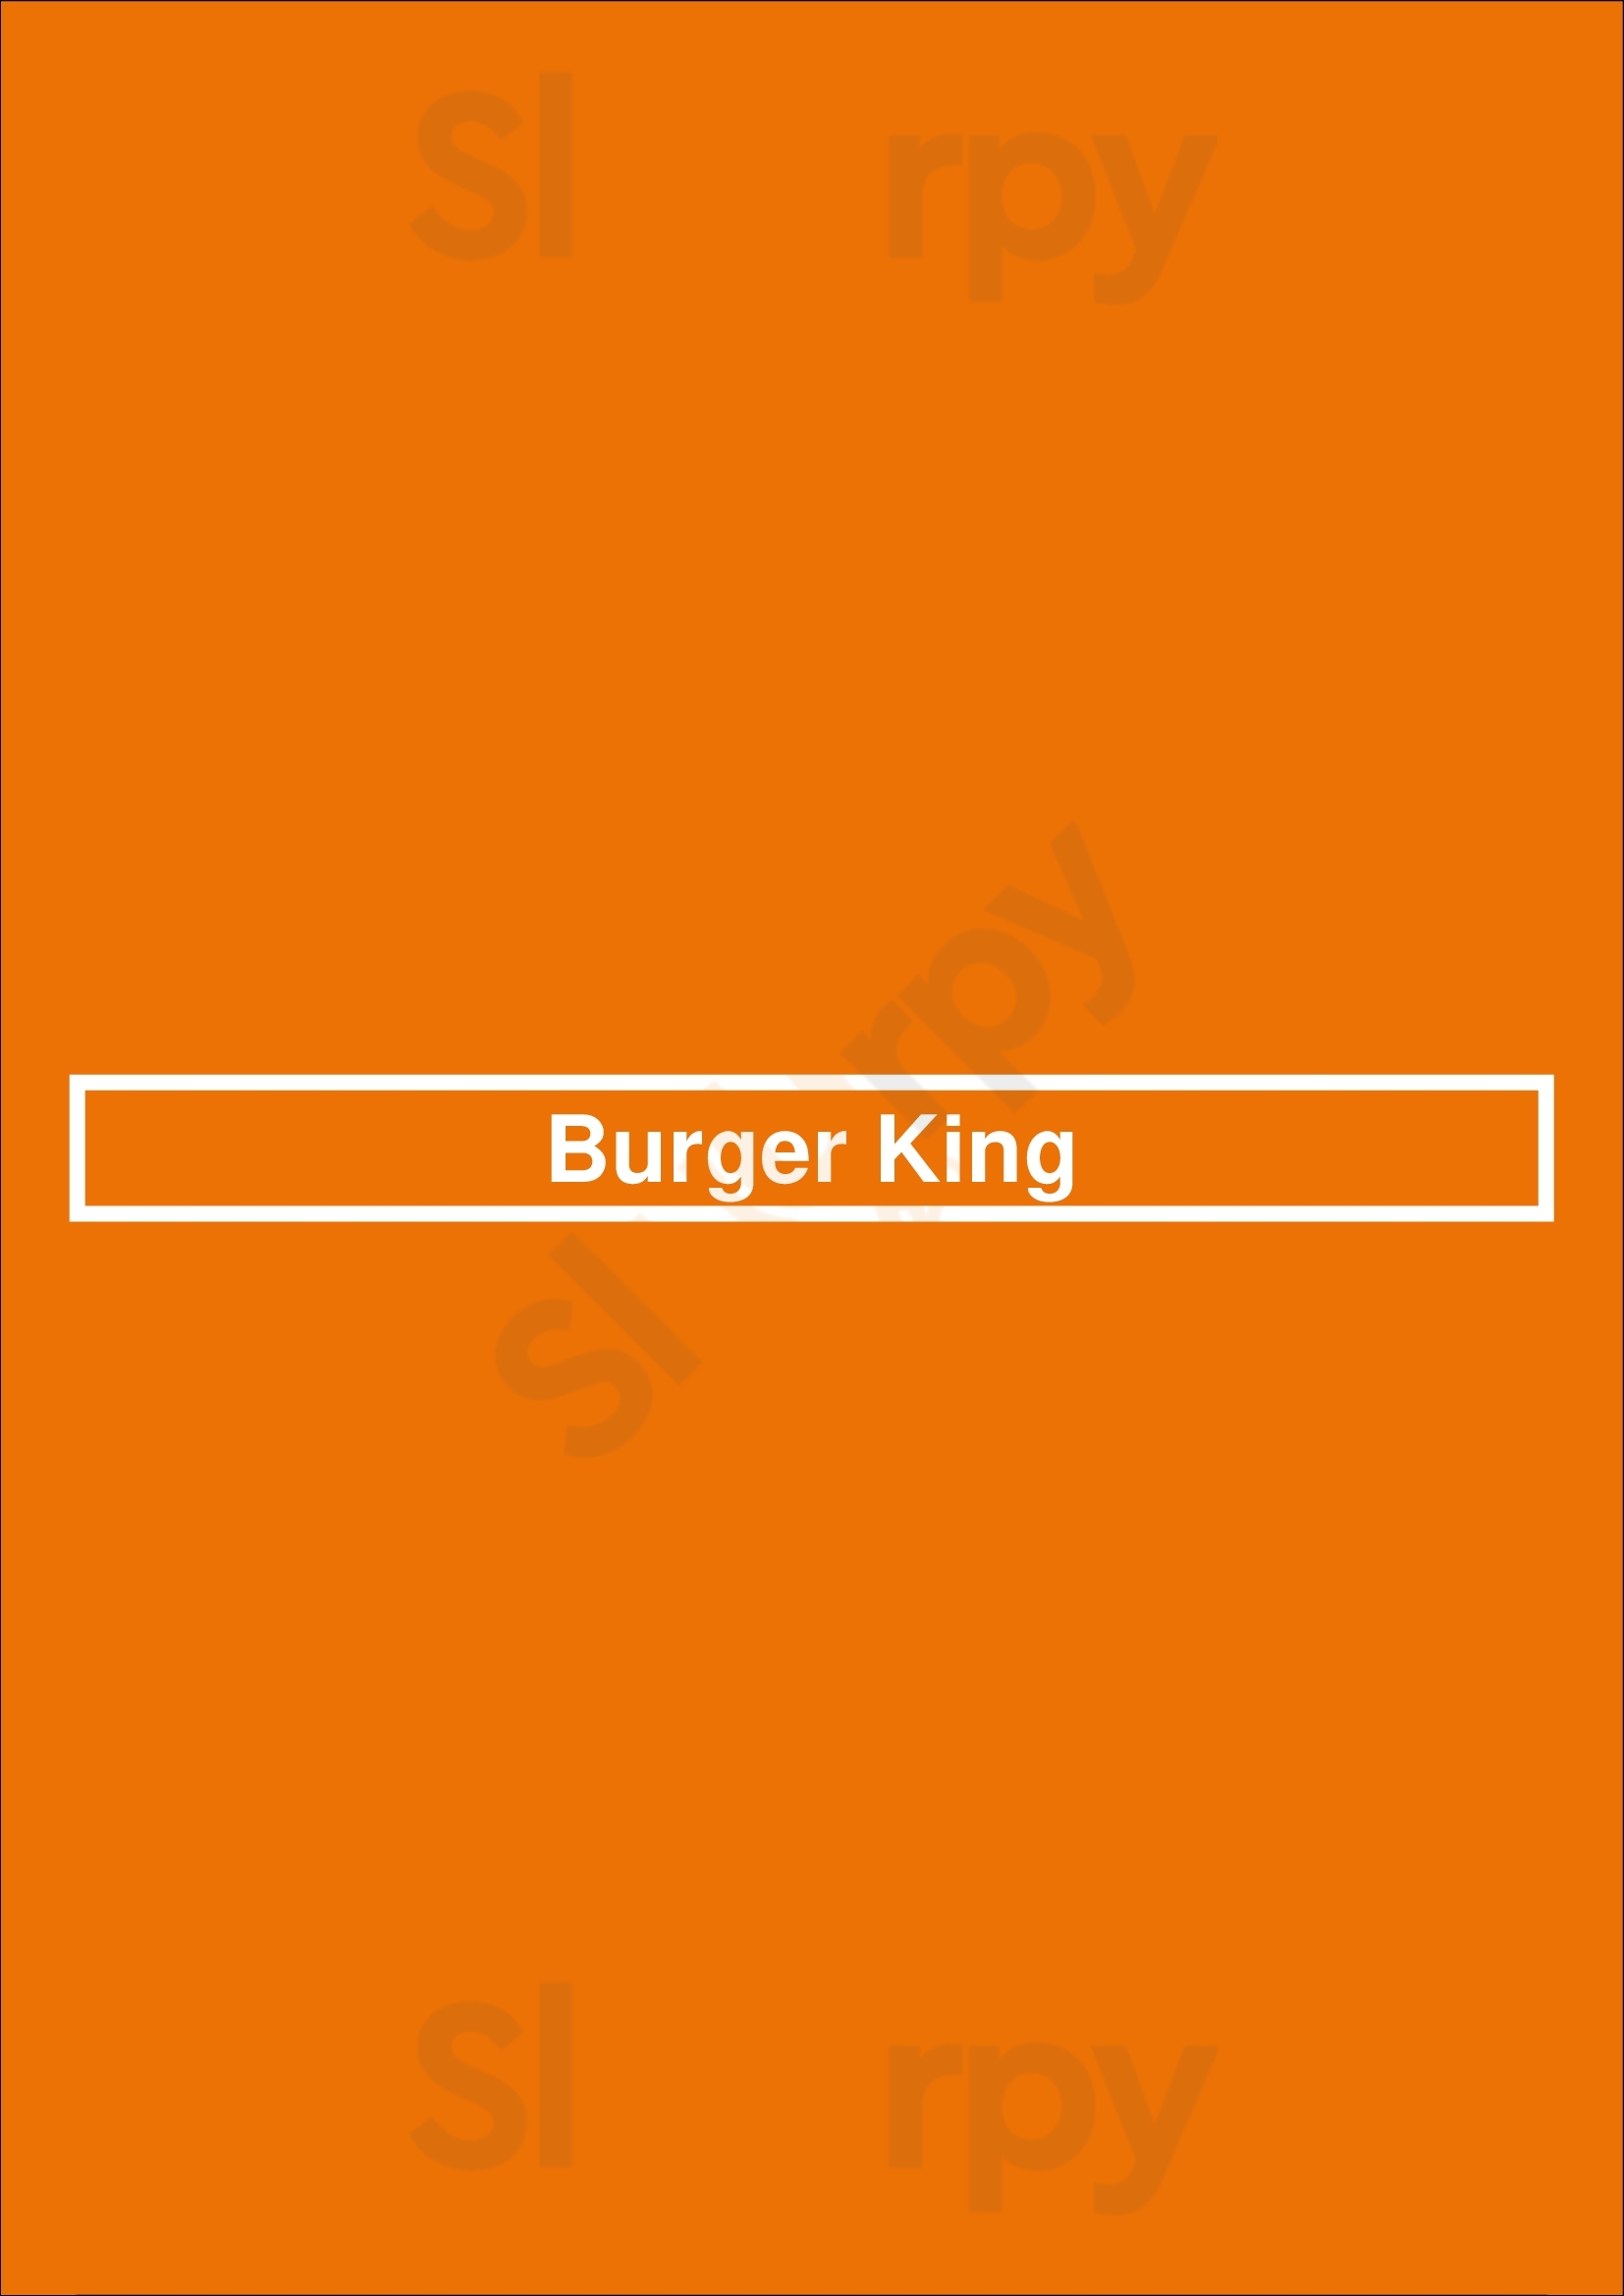 Burger King San Francisco Menu - 1